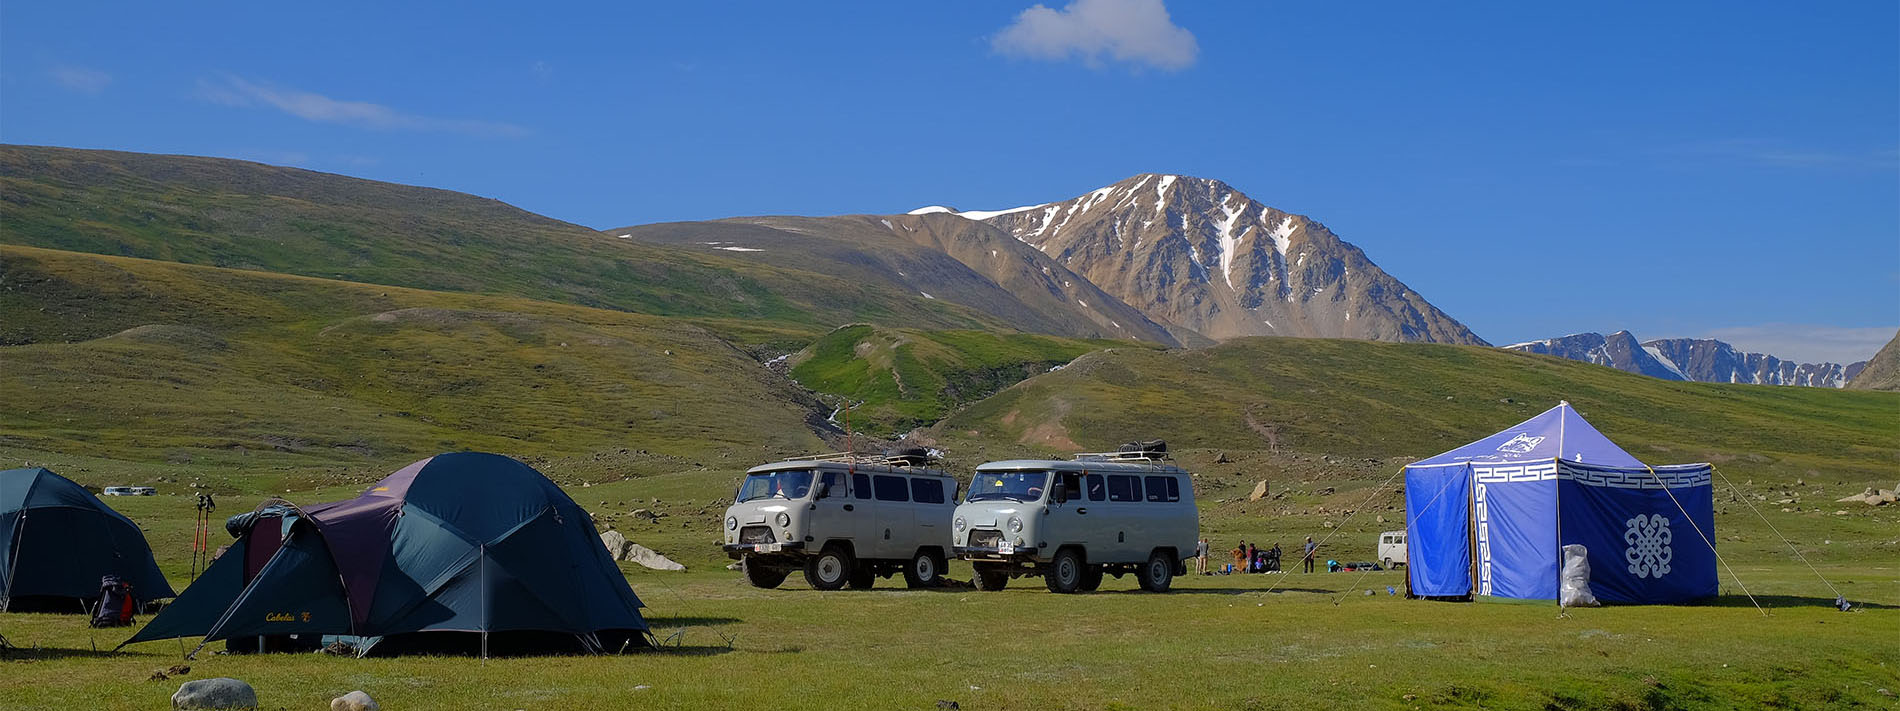 Altai, Hangai and Gobi Drive